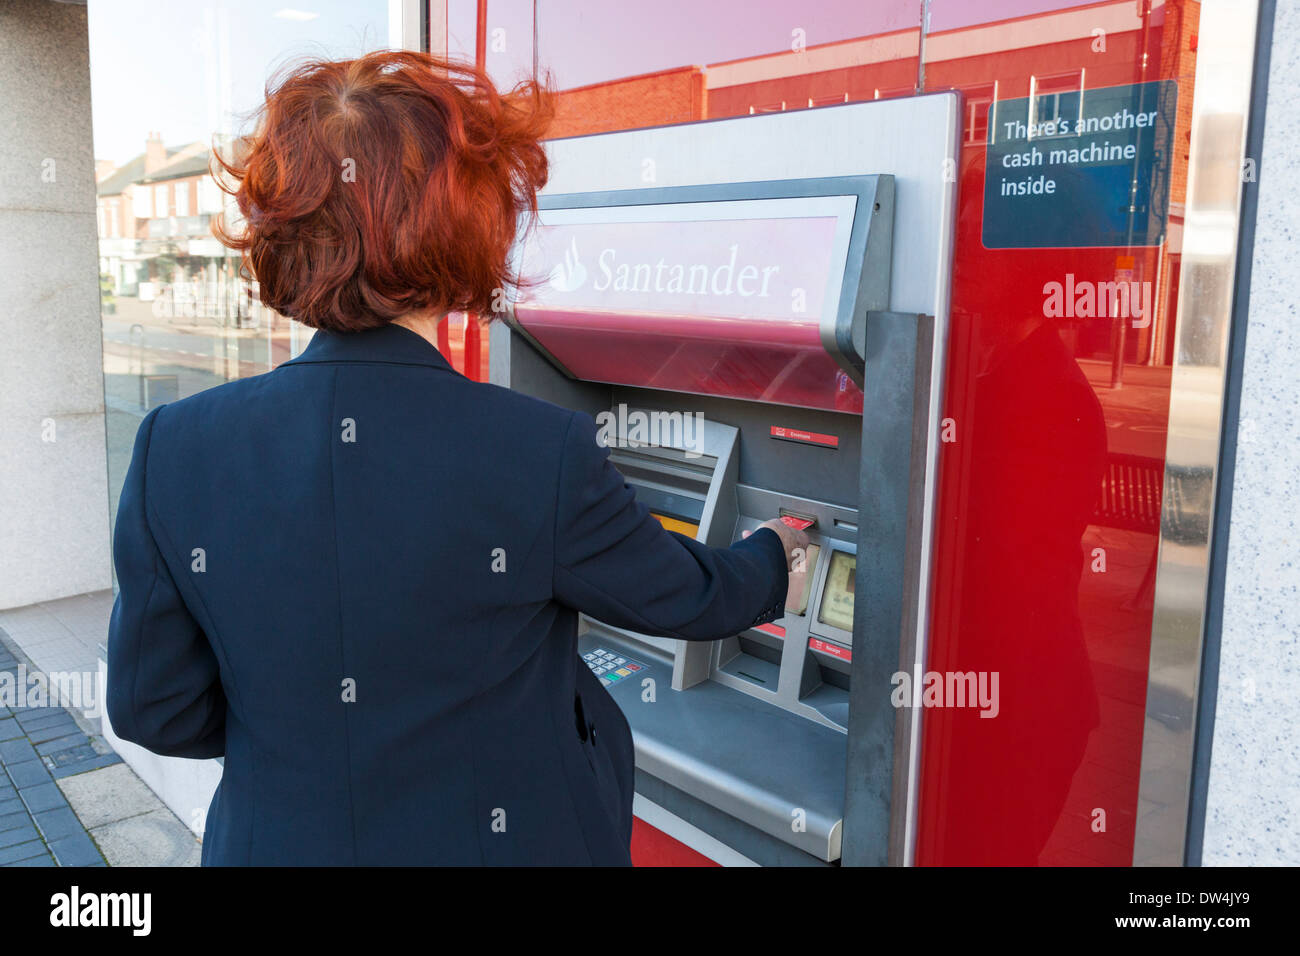 Personne de l'insertion d'une carte dans un distributeur automatique de billets à une banque Santander pour faire un retrait d'argent liquide, Lancashire, England, UK Banque D'Images